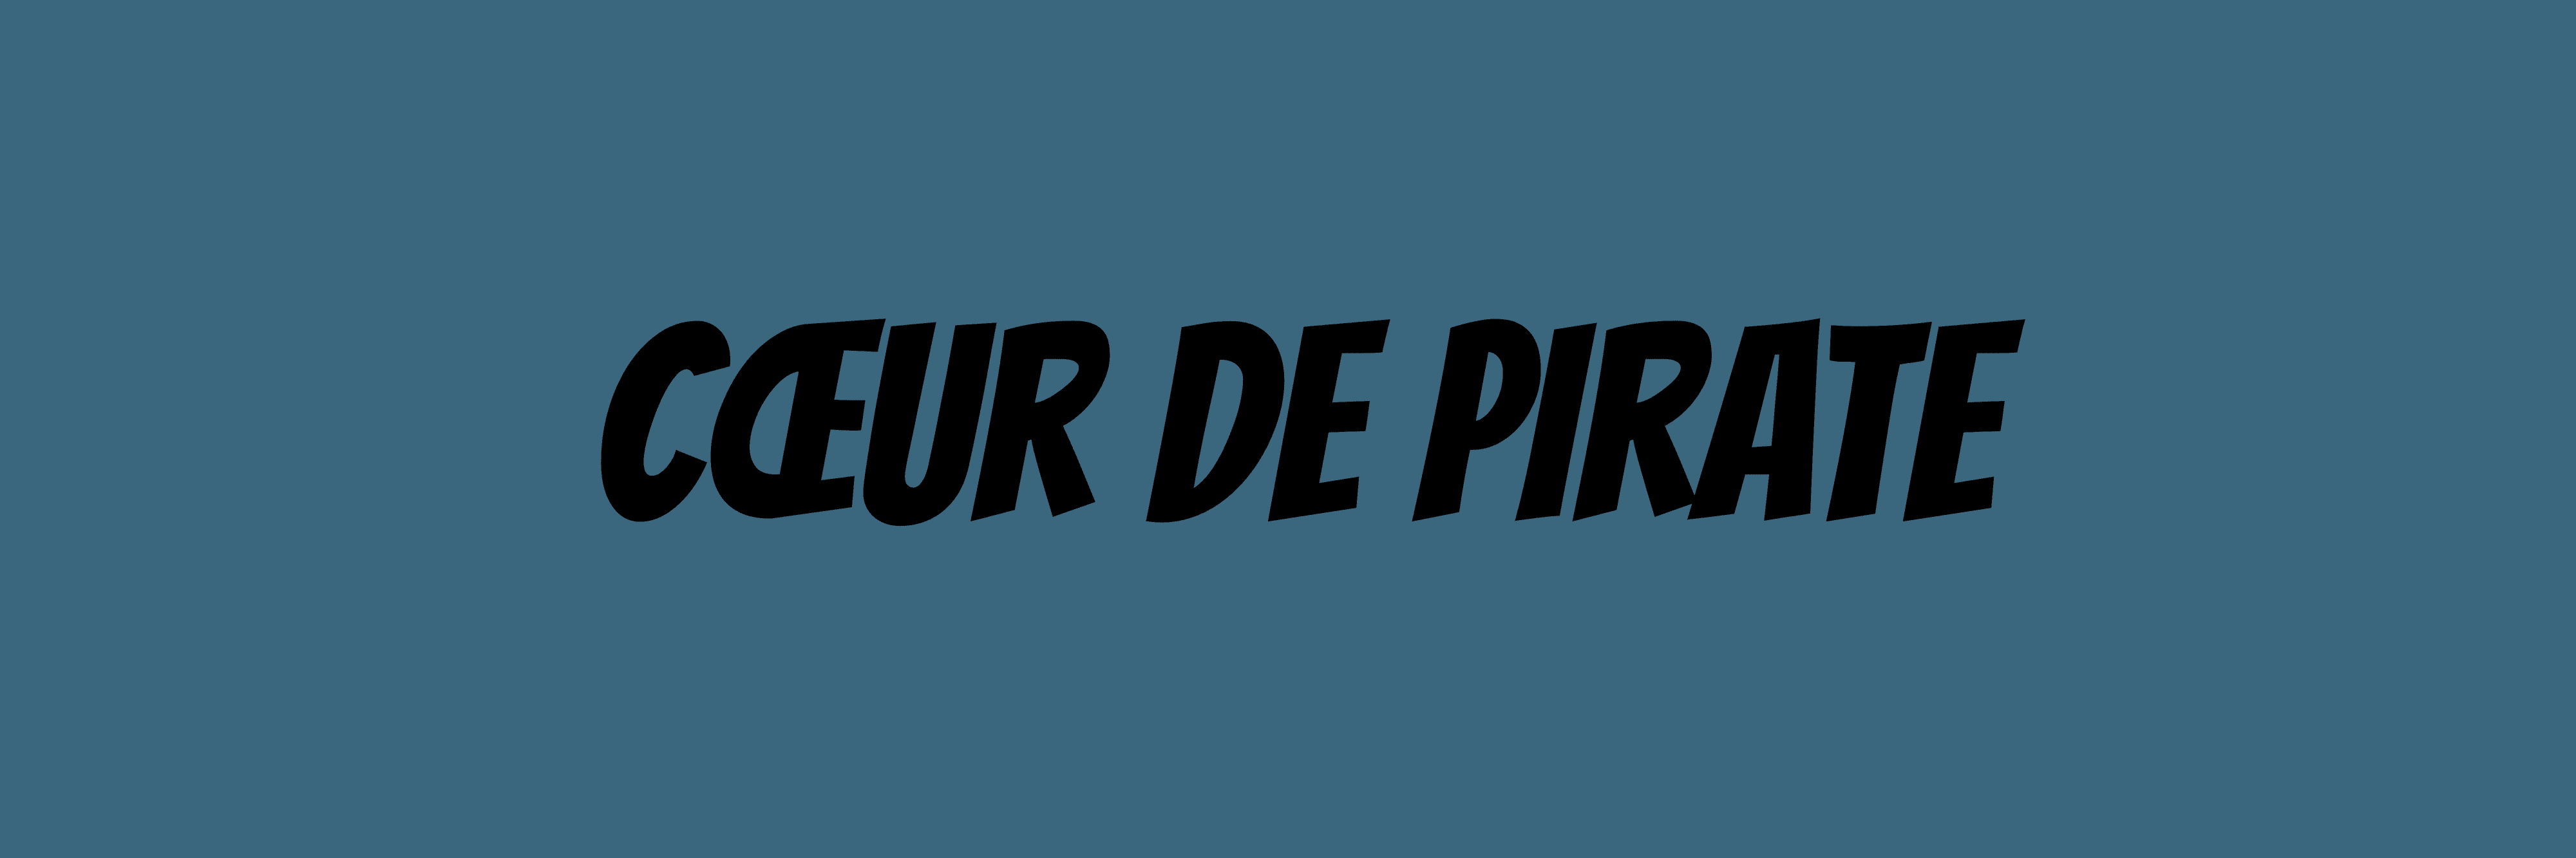 Coeur_de_pirate 横幅